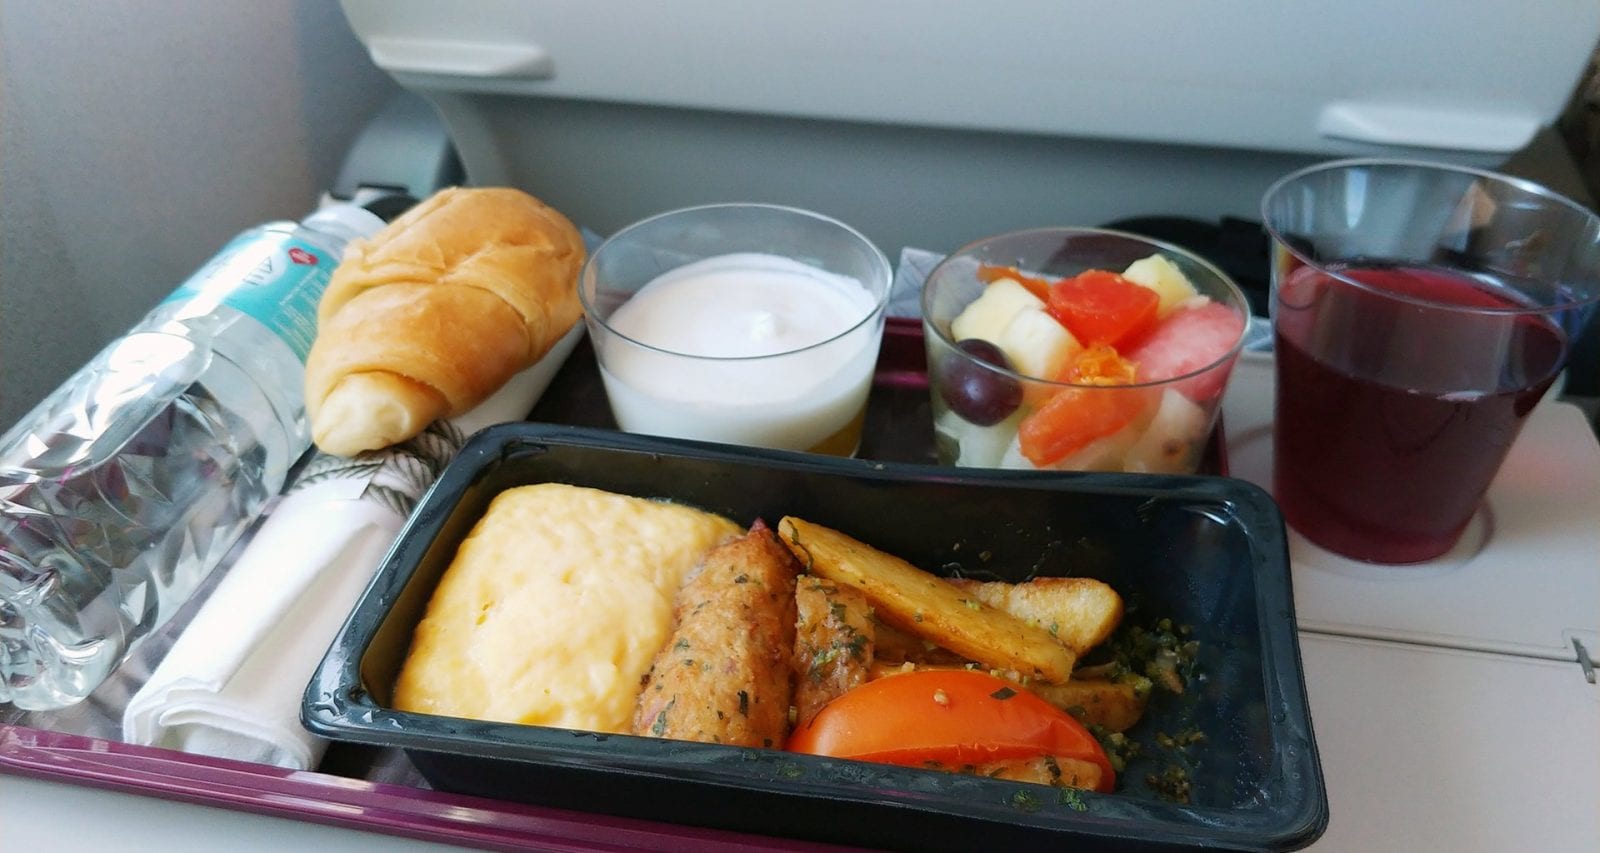 food & bevarage on plane